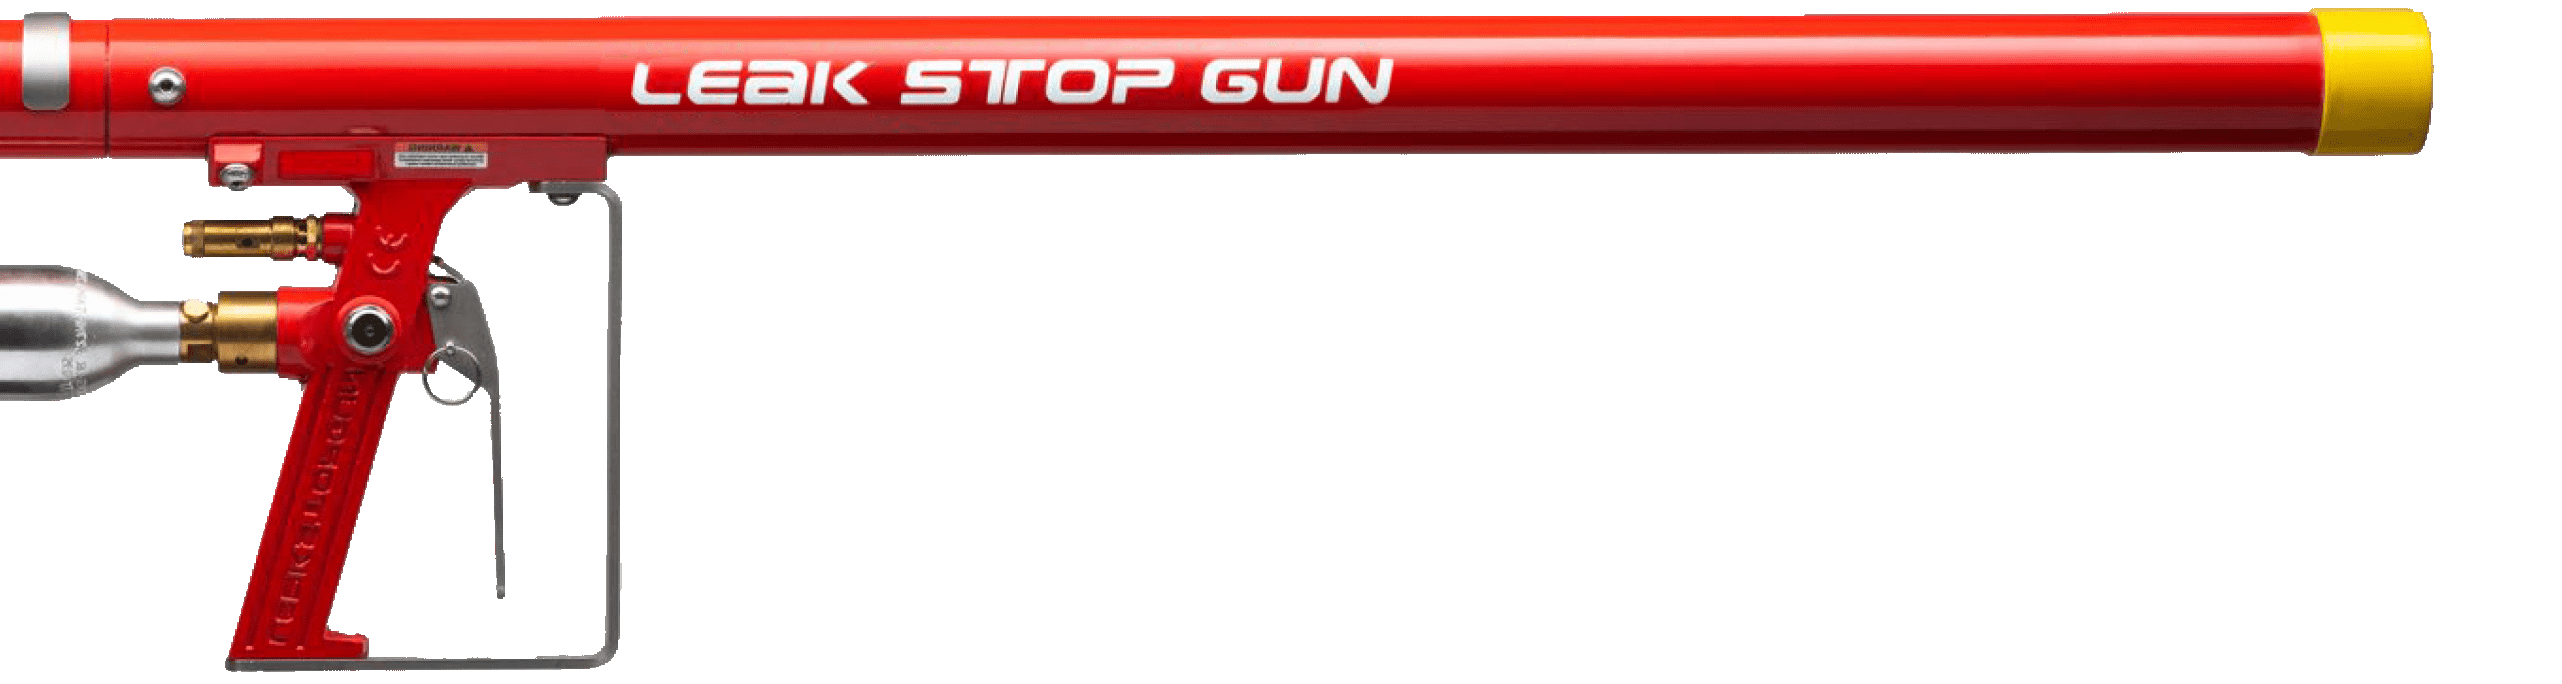 Leak Stop Gun LSG400